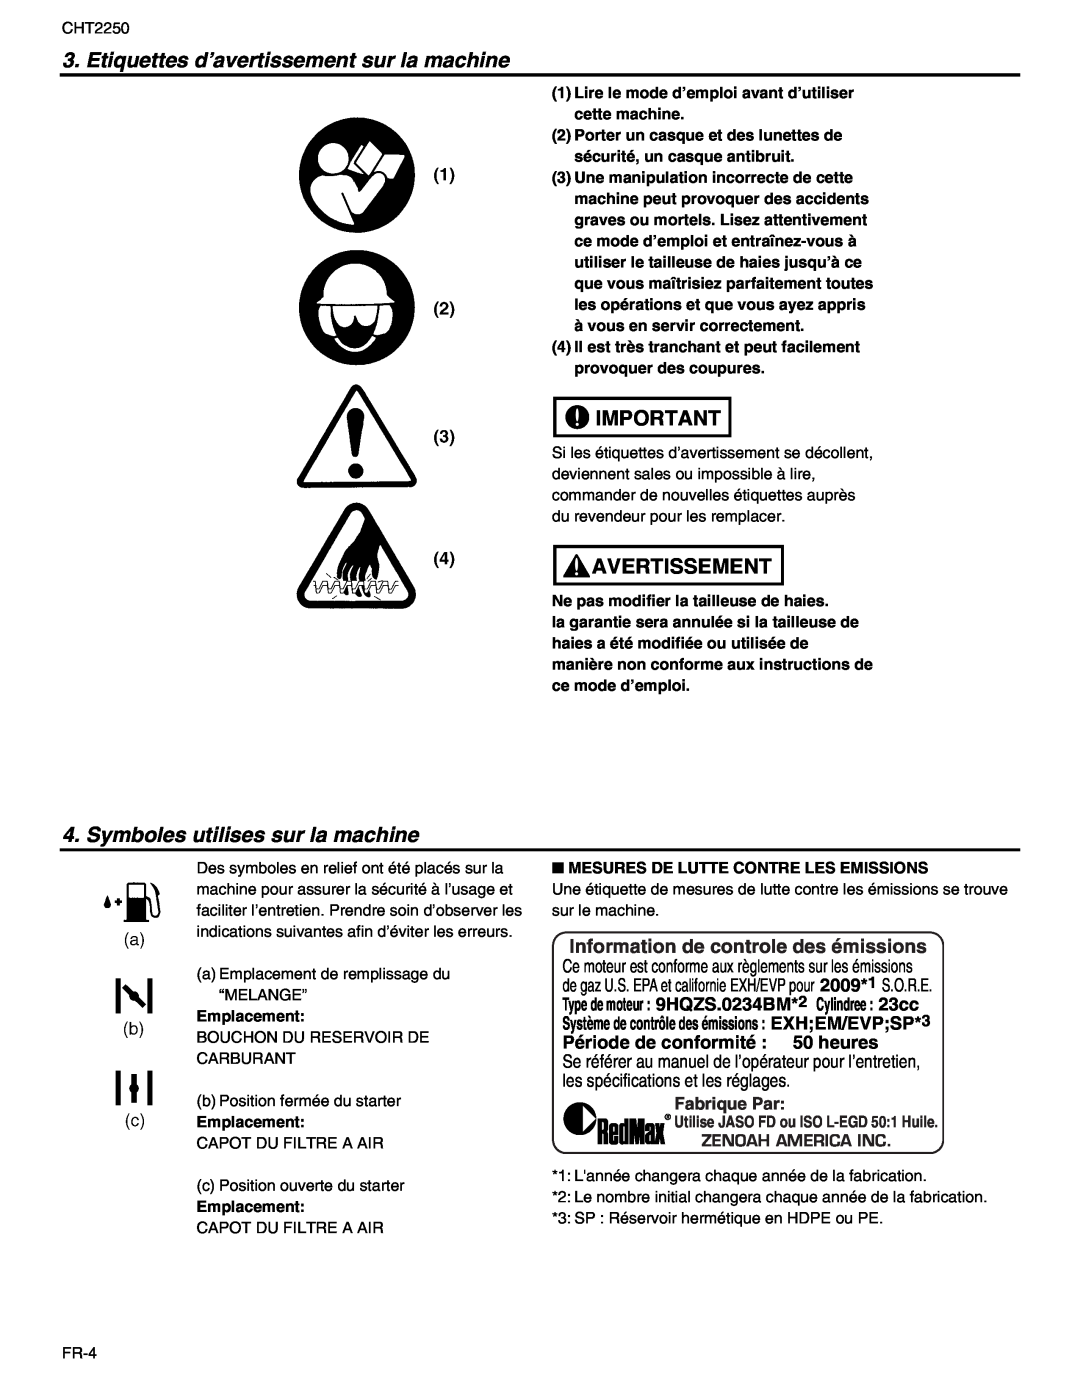 RedMax CHT2250 Etiquettes d’avertissement sur la machine, Symboles utilises sur la machine, Fabrique Par, Avertissement 